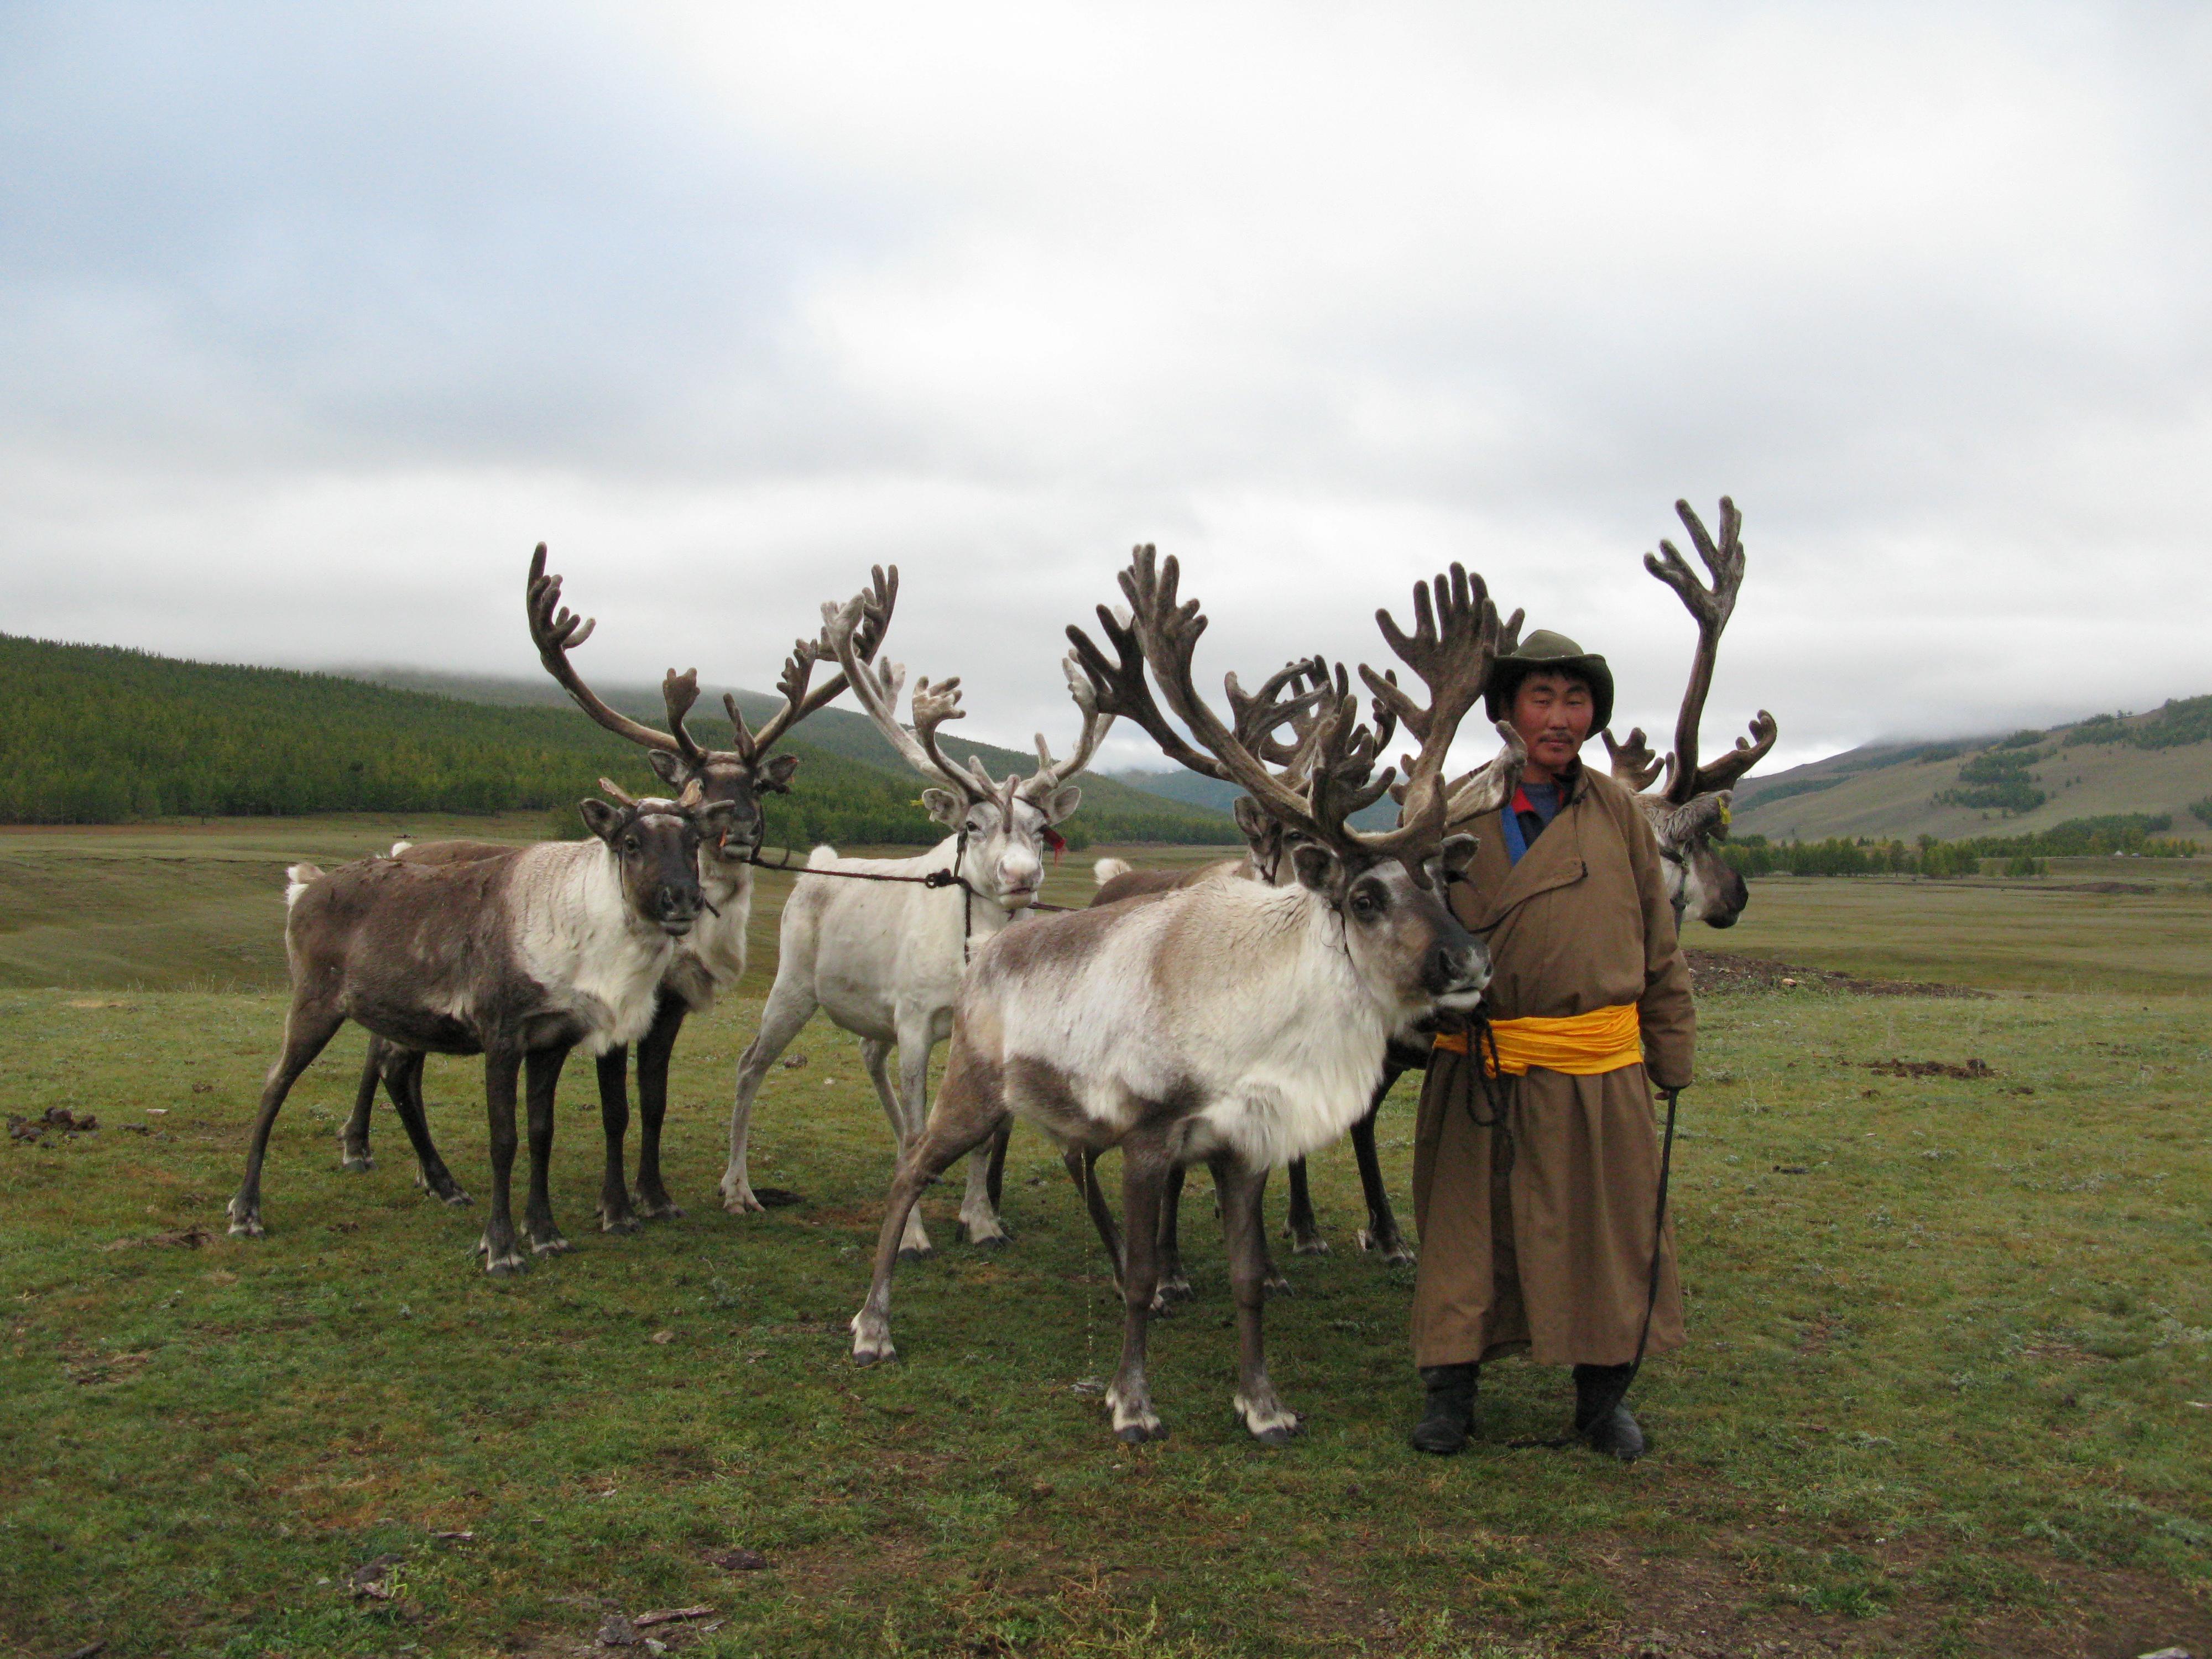 2009 年 9 月，查坦向导 Amerjeral（又叫 Khalzan）在蒙古国北部达哈德山谷 (Darkhad Valley)。 
照片来源： 
史密森尼博物院博物馆保护研究所 (Museum Conservation Institute) 葆拉•德普瑞斯特 (Paula DePriest)。
